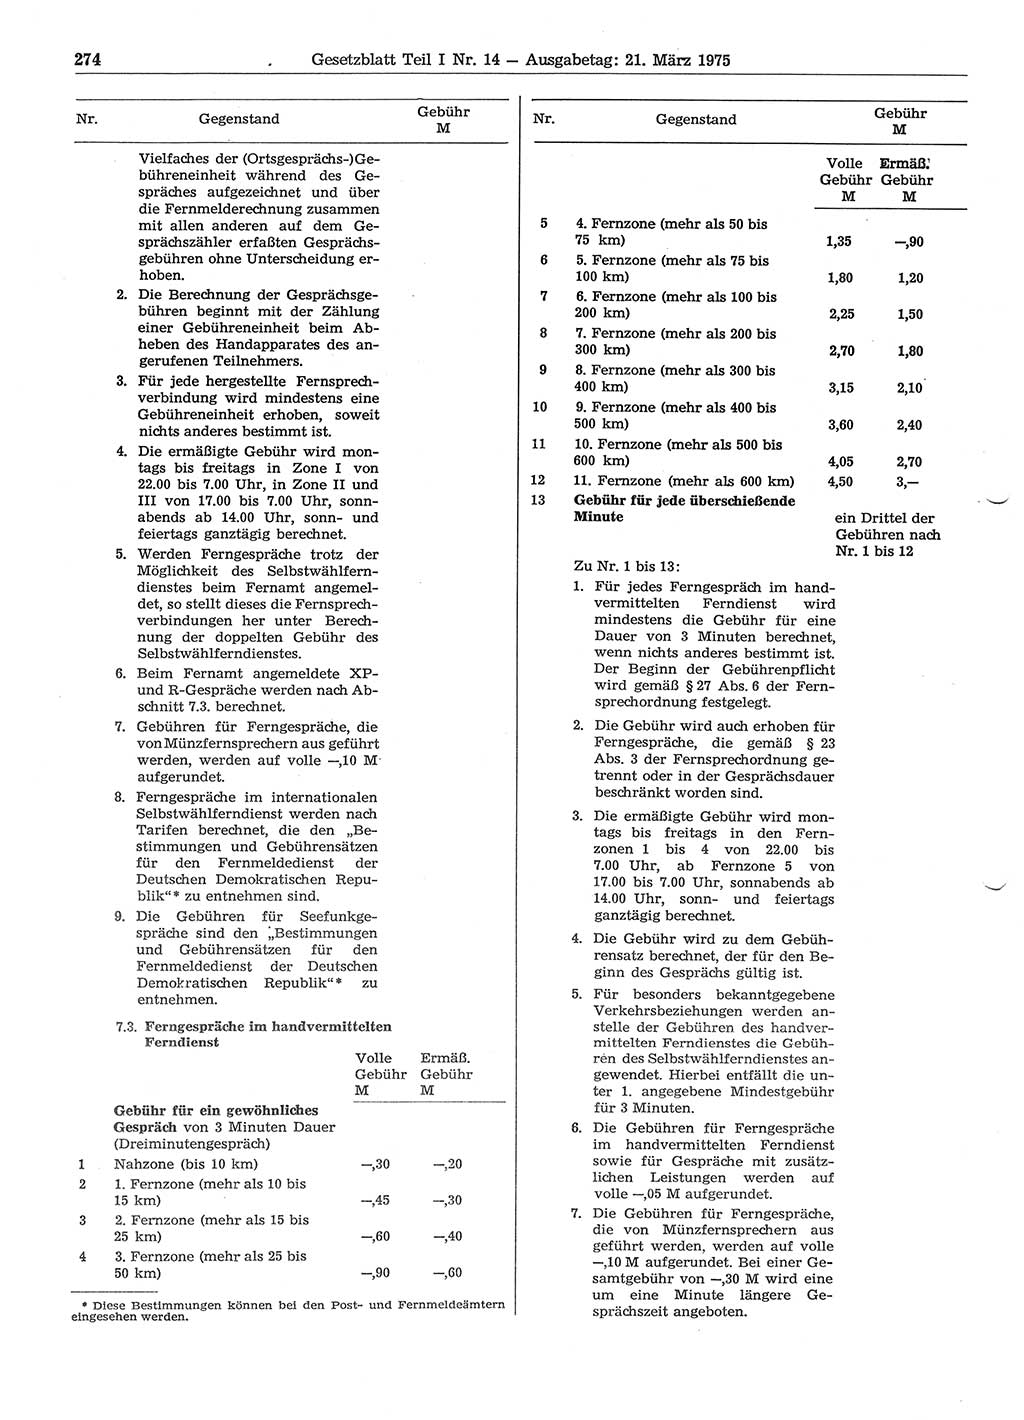 Gesetzblatt (GBl.) der Deutschen Demokratischen Republik (DDR) Teil Ⅰ 1975, Seite 274 (GBl. DDR Ⅰ 1975, S. 274)